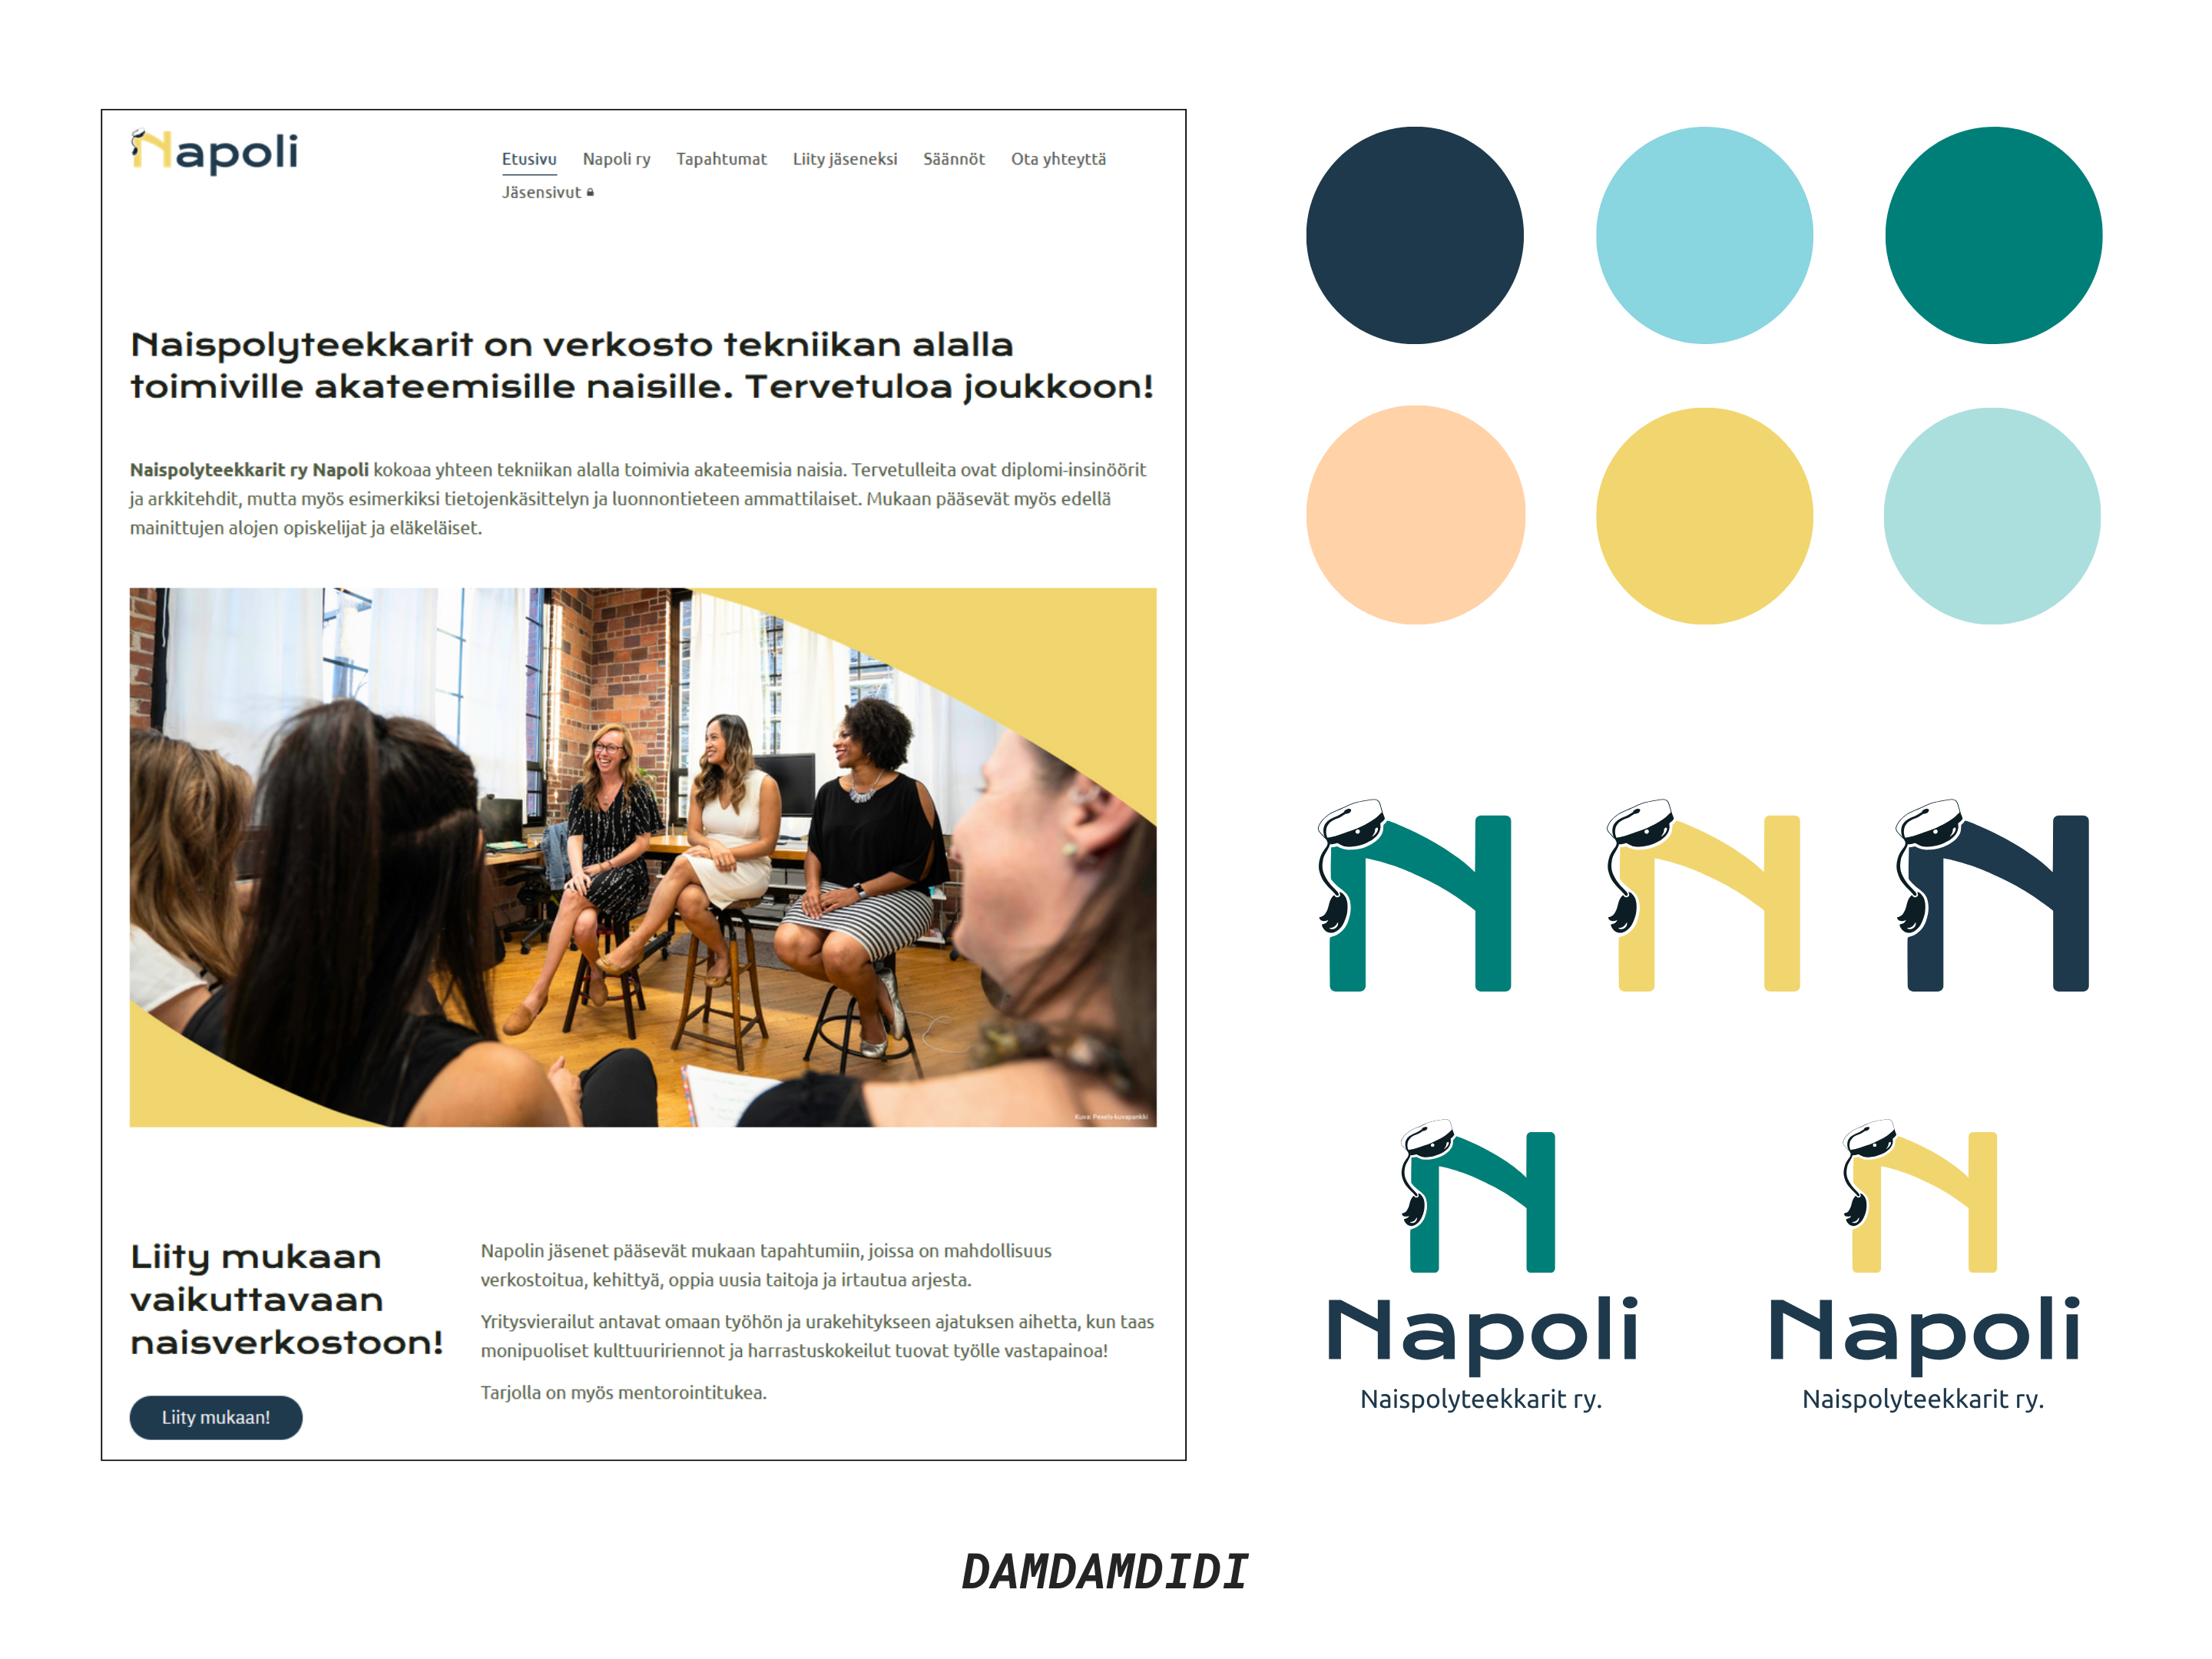 Kuvakaappaus Napoli ry:n verkkosivujen etusivulta, värimaailmaa kuvattuna väripalloina sekä esimerkkejä muutamista yhdistykselle tehdyistä logoversioista.